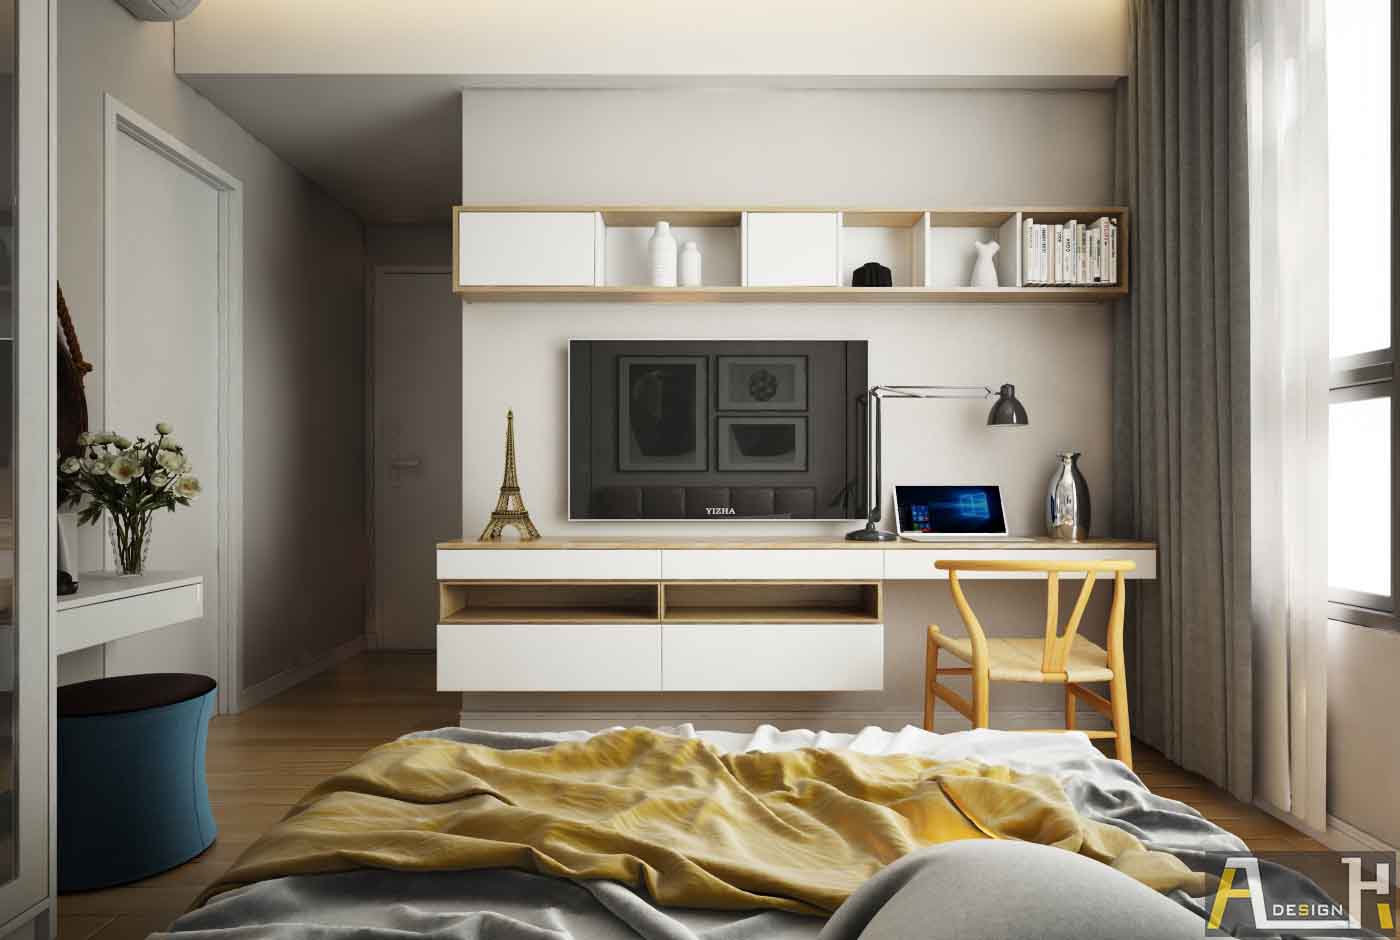 Kinh nghiệm thiết kế nội thất chung cư - bày trí nội thất phòng ngủ nên đơn giản và tạo sự thoải mái